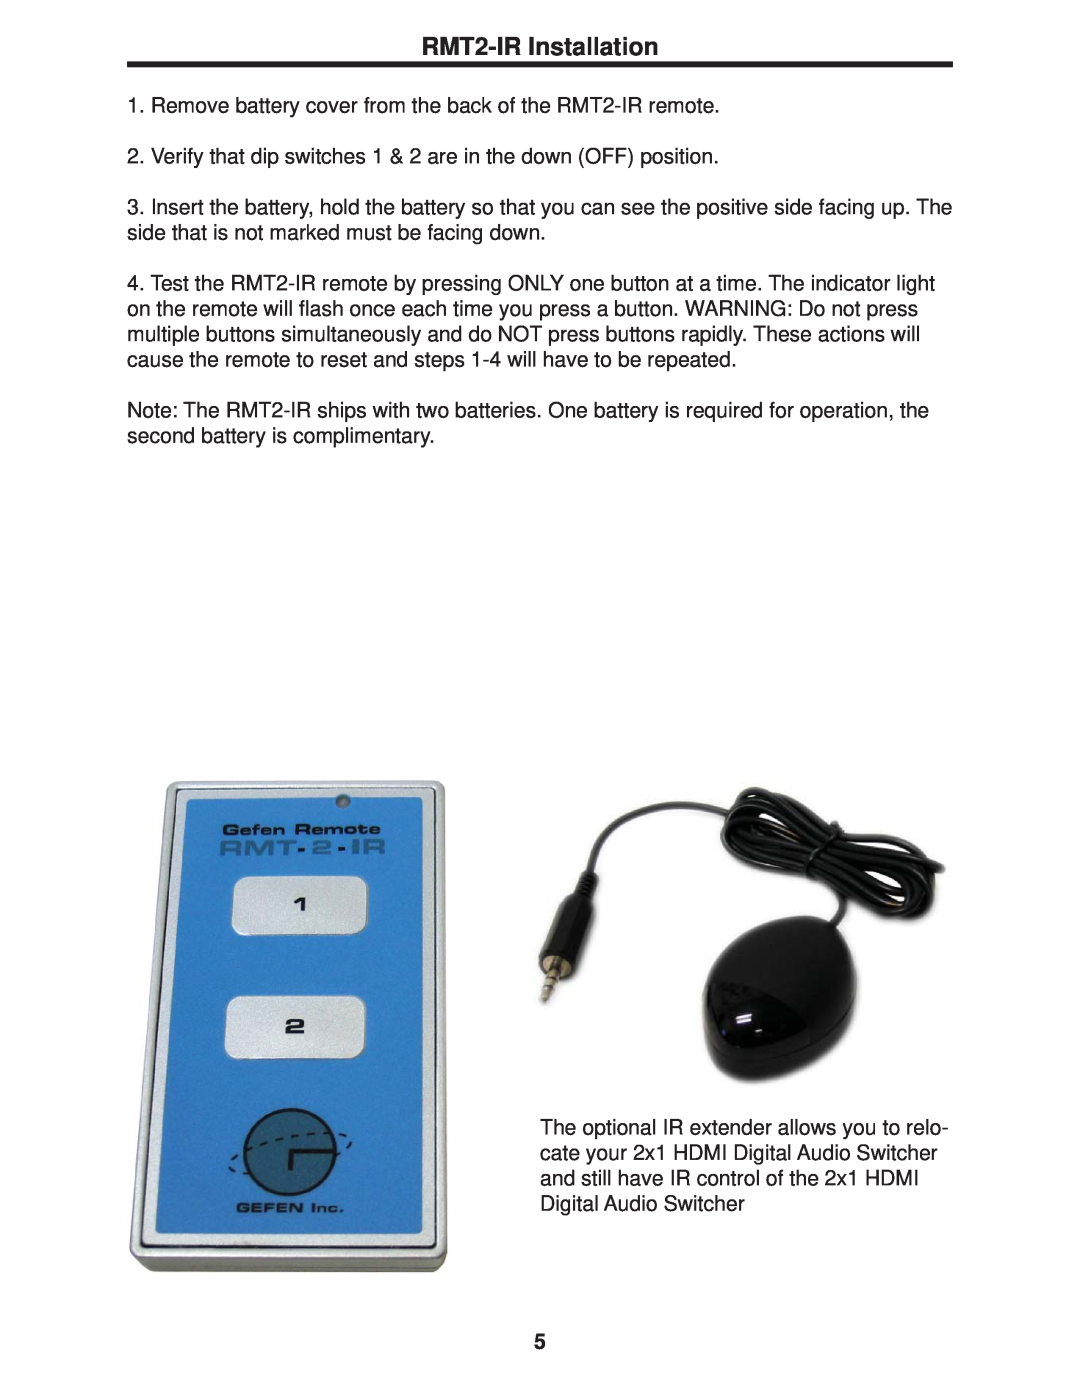 Gefen Digital Audio Switcher user manual RMT2-IR Installation 